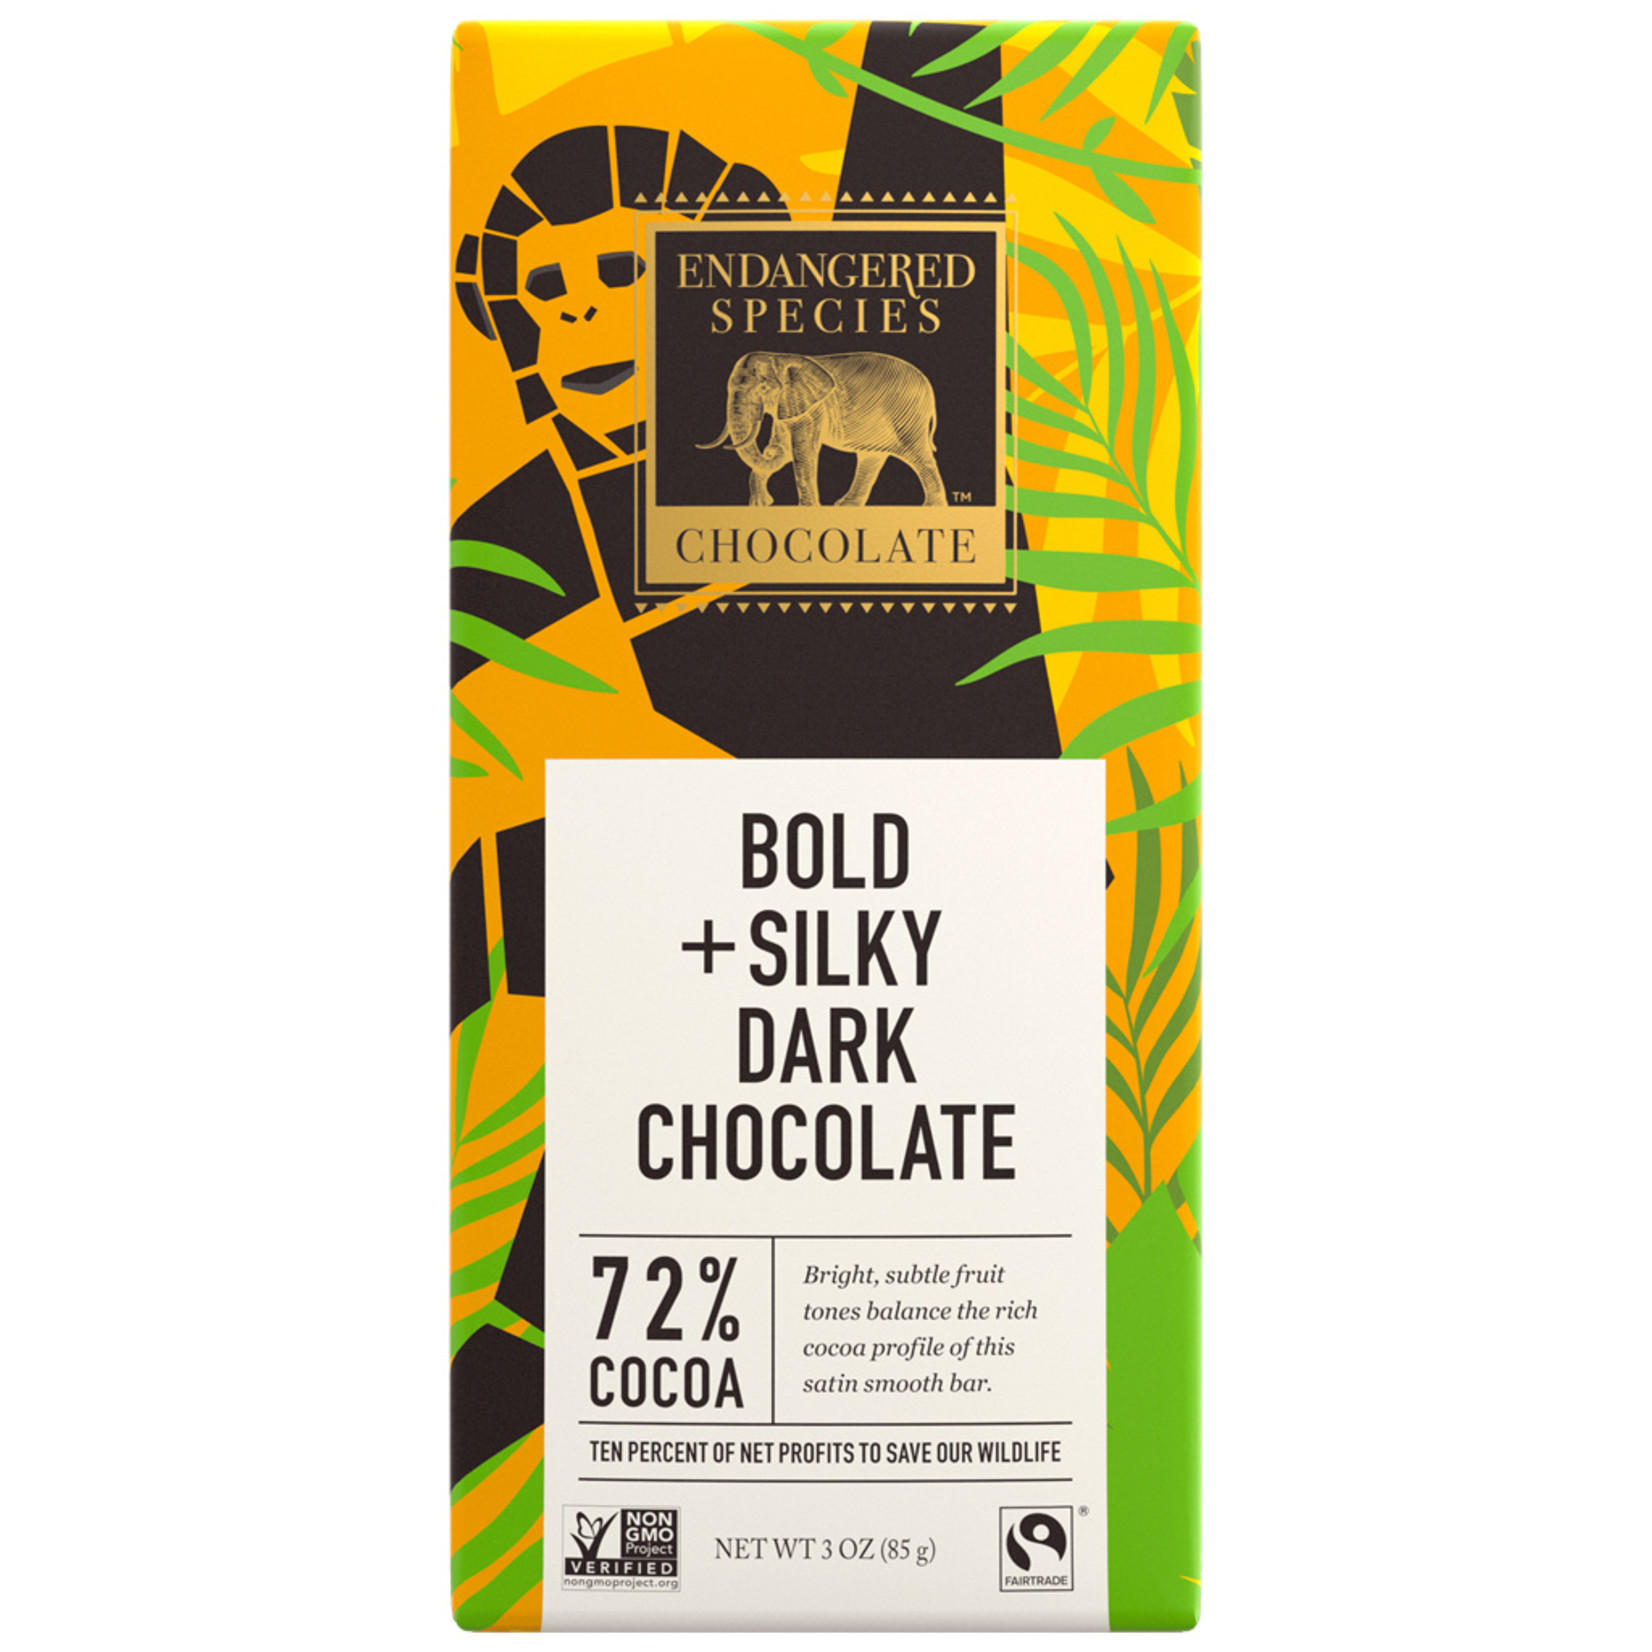 Endangered Species Endangered Species - Dark Chocolate Bar, Chimpanzee Smooth Dark